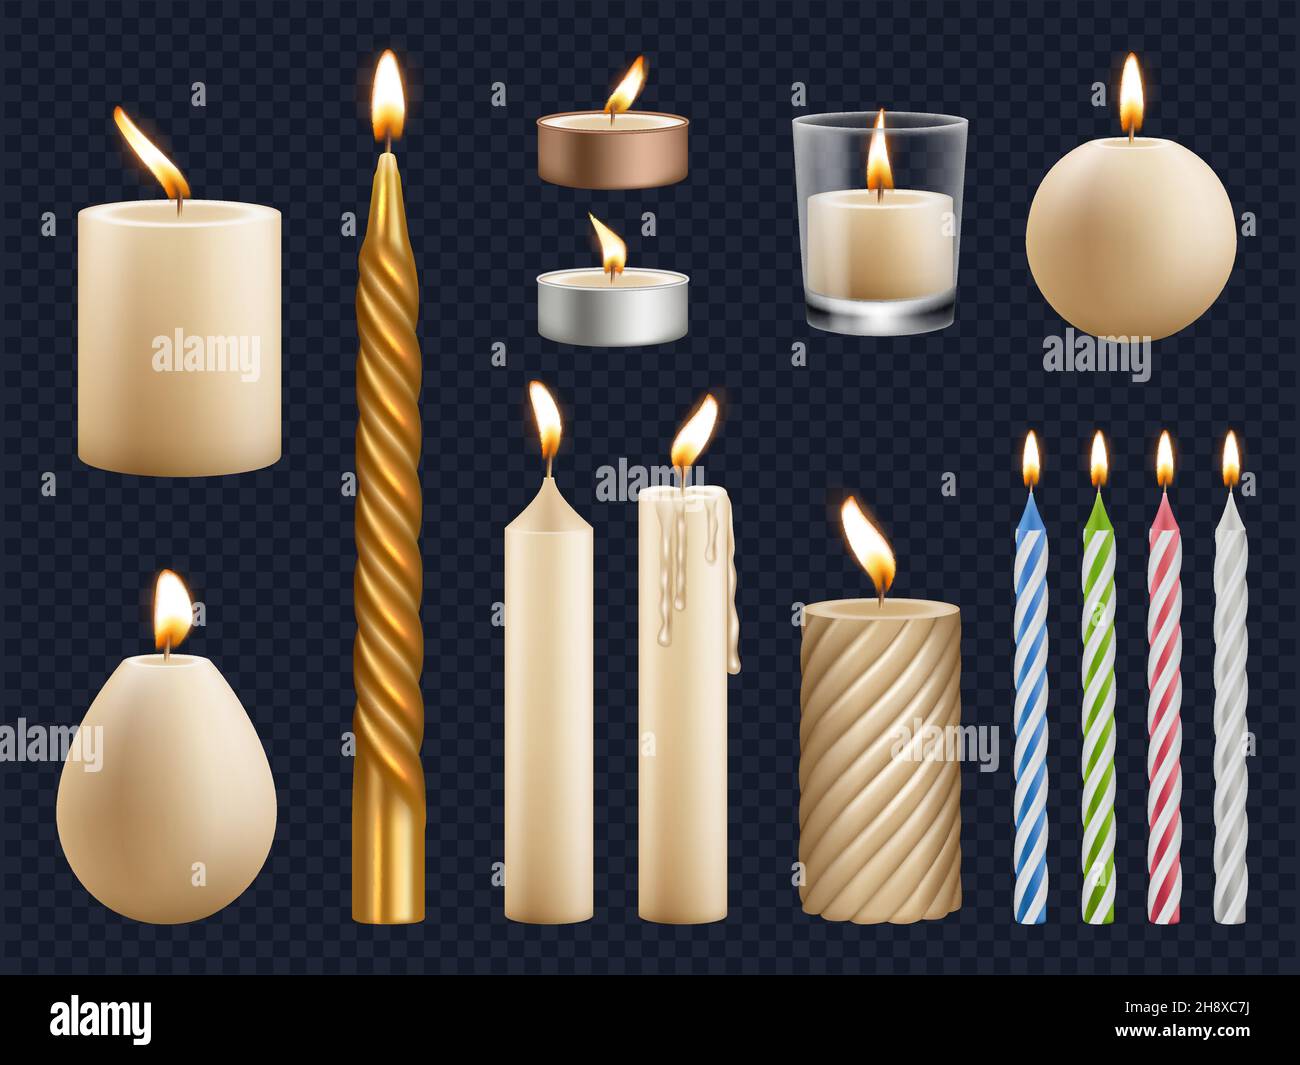 Realistische Kerzen. Kirche Wachs Kerzen Sammlung Geburtstag Feier Feuer Gegenstände Beleuchtung leuchten Effekte anständige Vektor-Vorlagen isoliert gesetzt Stock Vektor